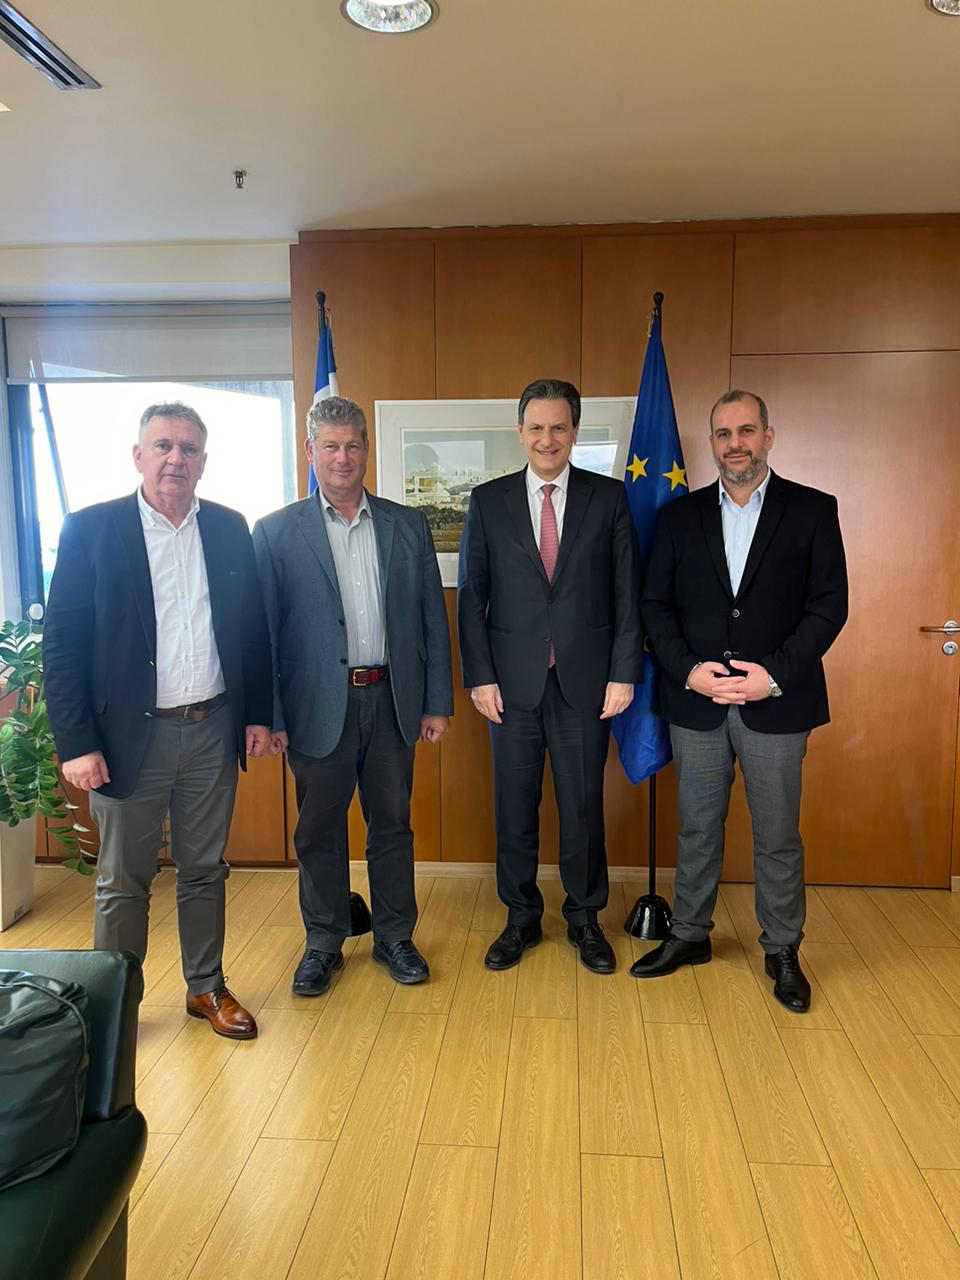 Κρήτη: Στρατηγικό επιχειρησιακό σχέδιο εκμετάλλευσης υδρογονανθράκων θέλει το επιχειρείν